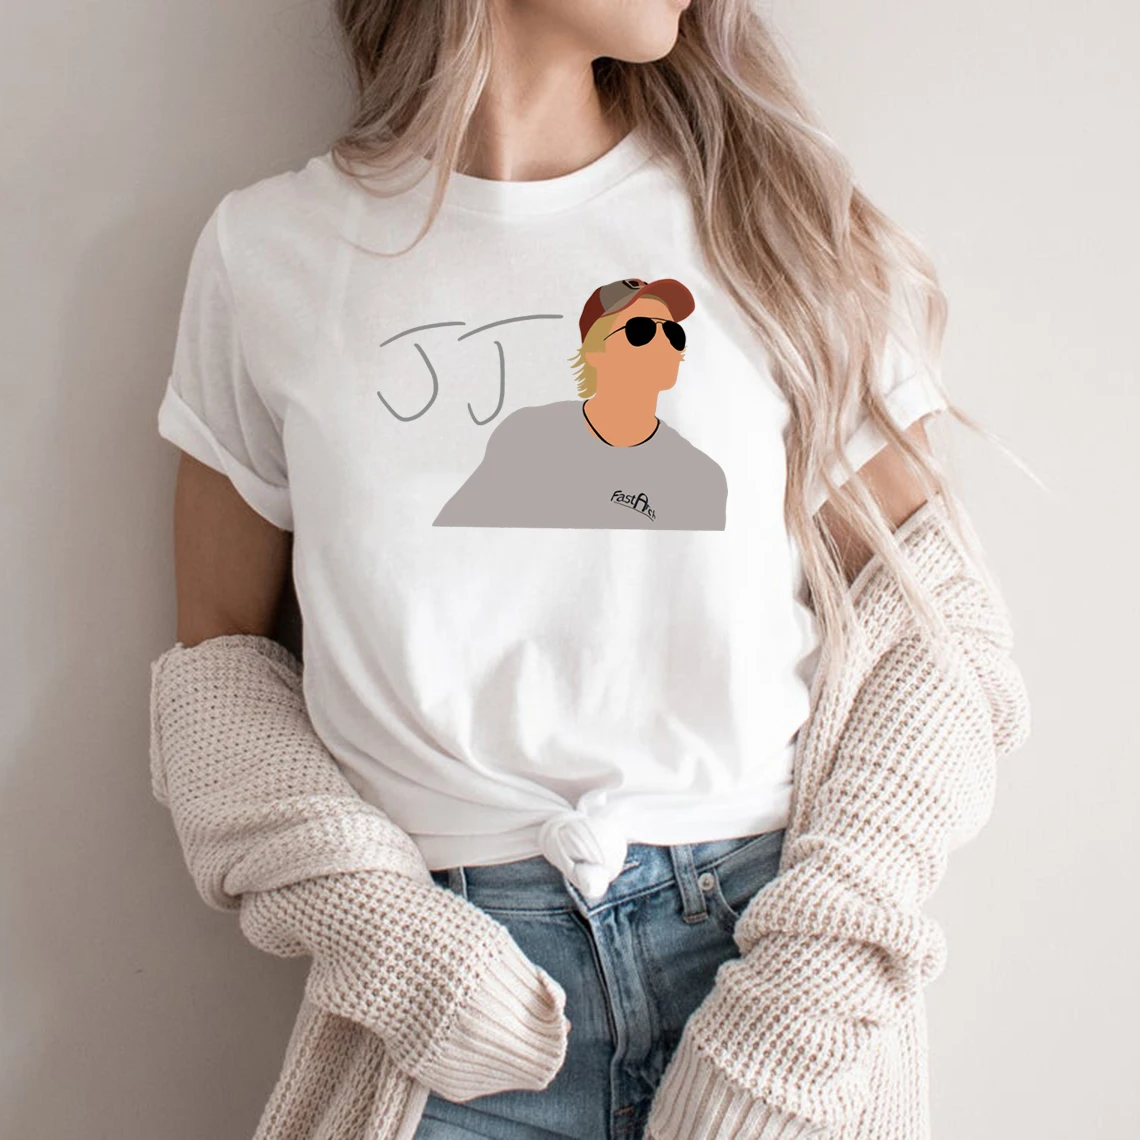 

Новинка 2021, футболка JJ с внешним банком, футболка Pogue Life, Северная Каролина, футболка OBX, футболка унисекс, графические футболки для женщин